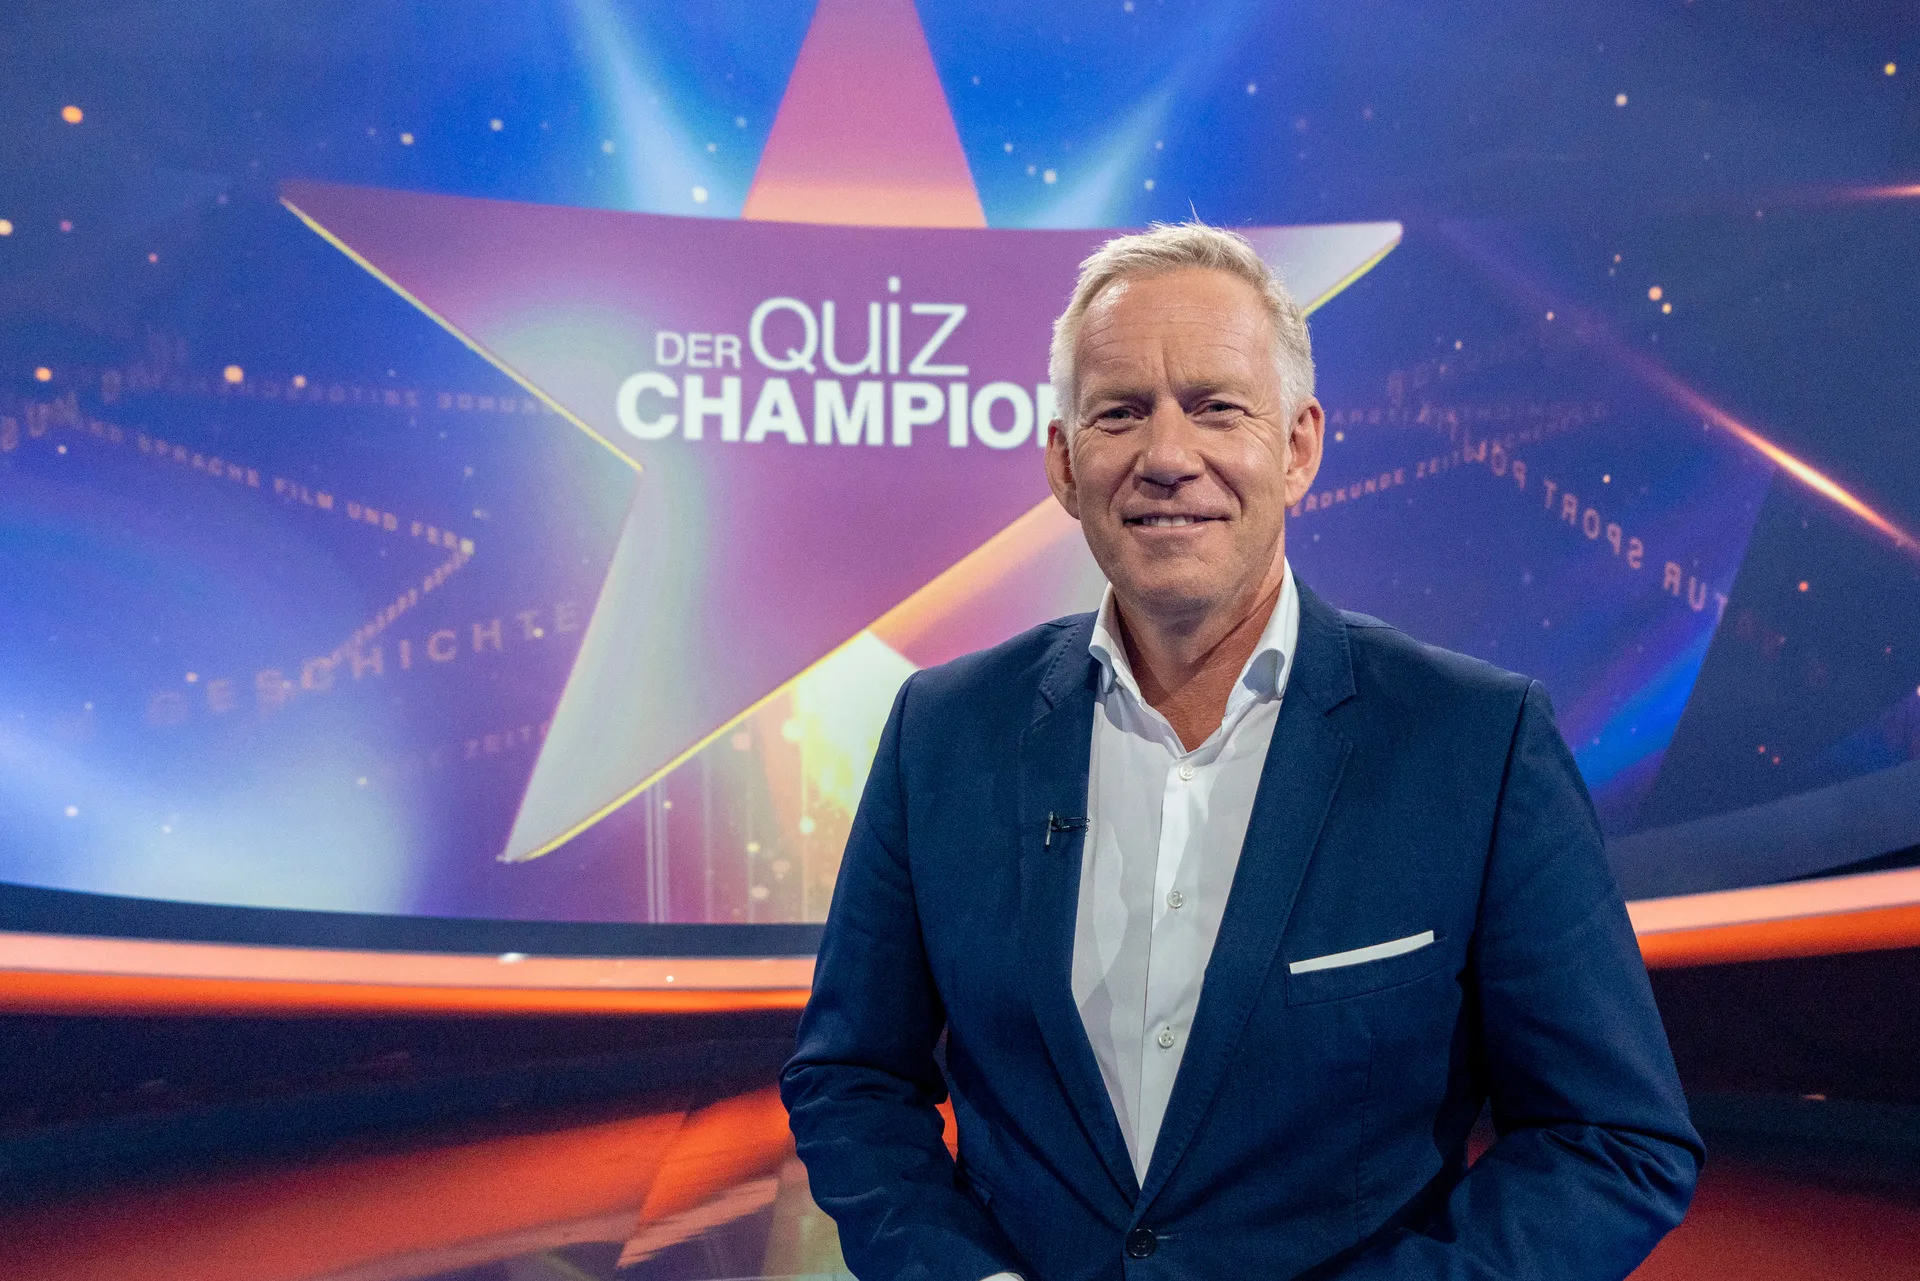 Der Quiz-Champion mit Johannes B. Kerner am 24. September im ZDF